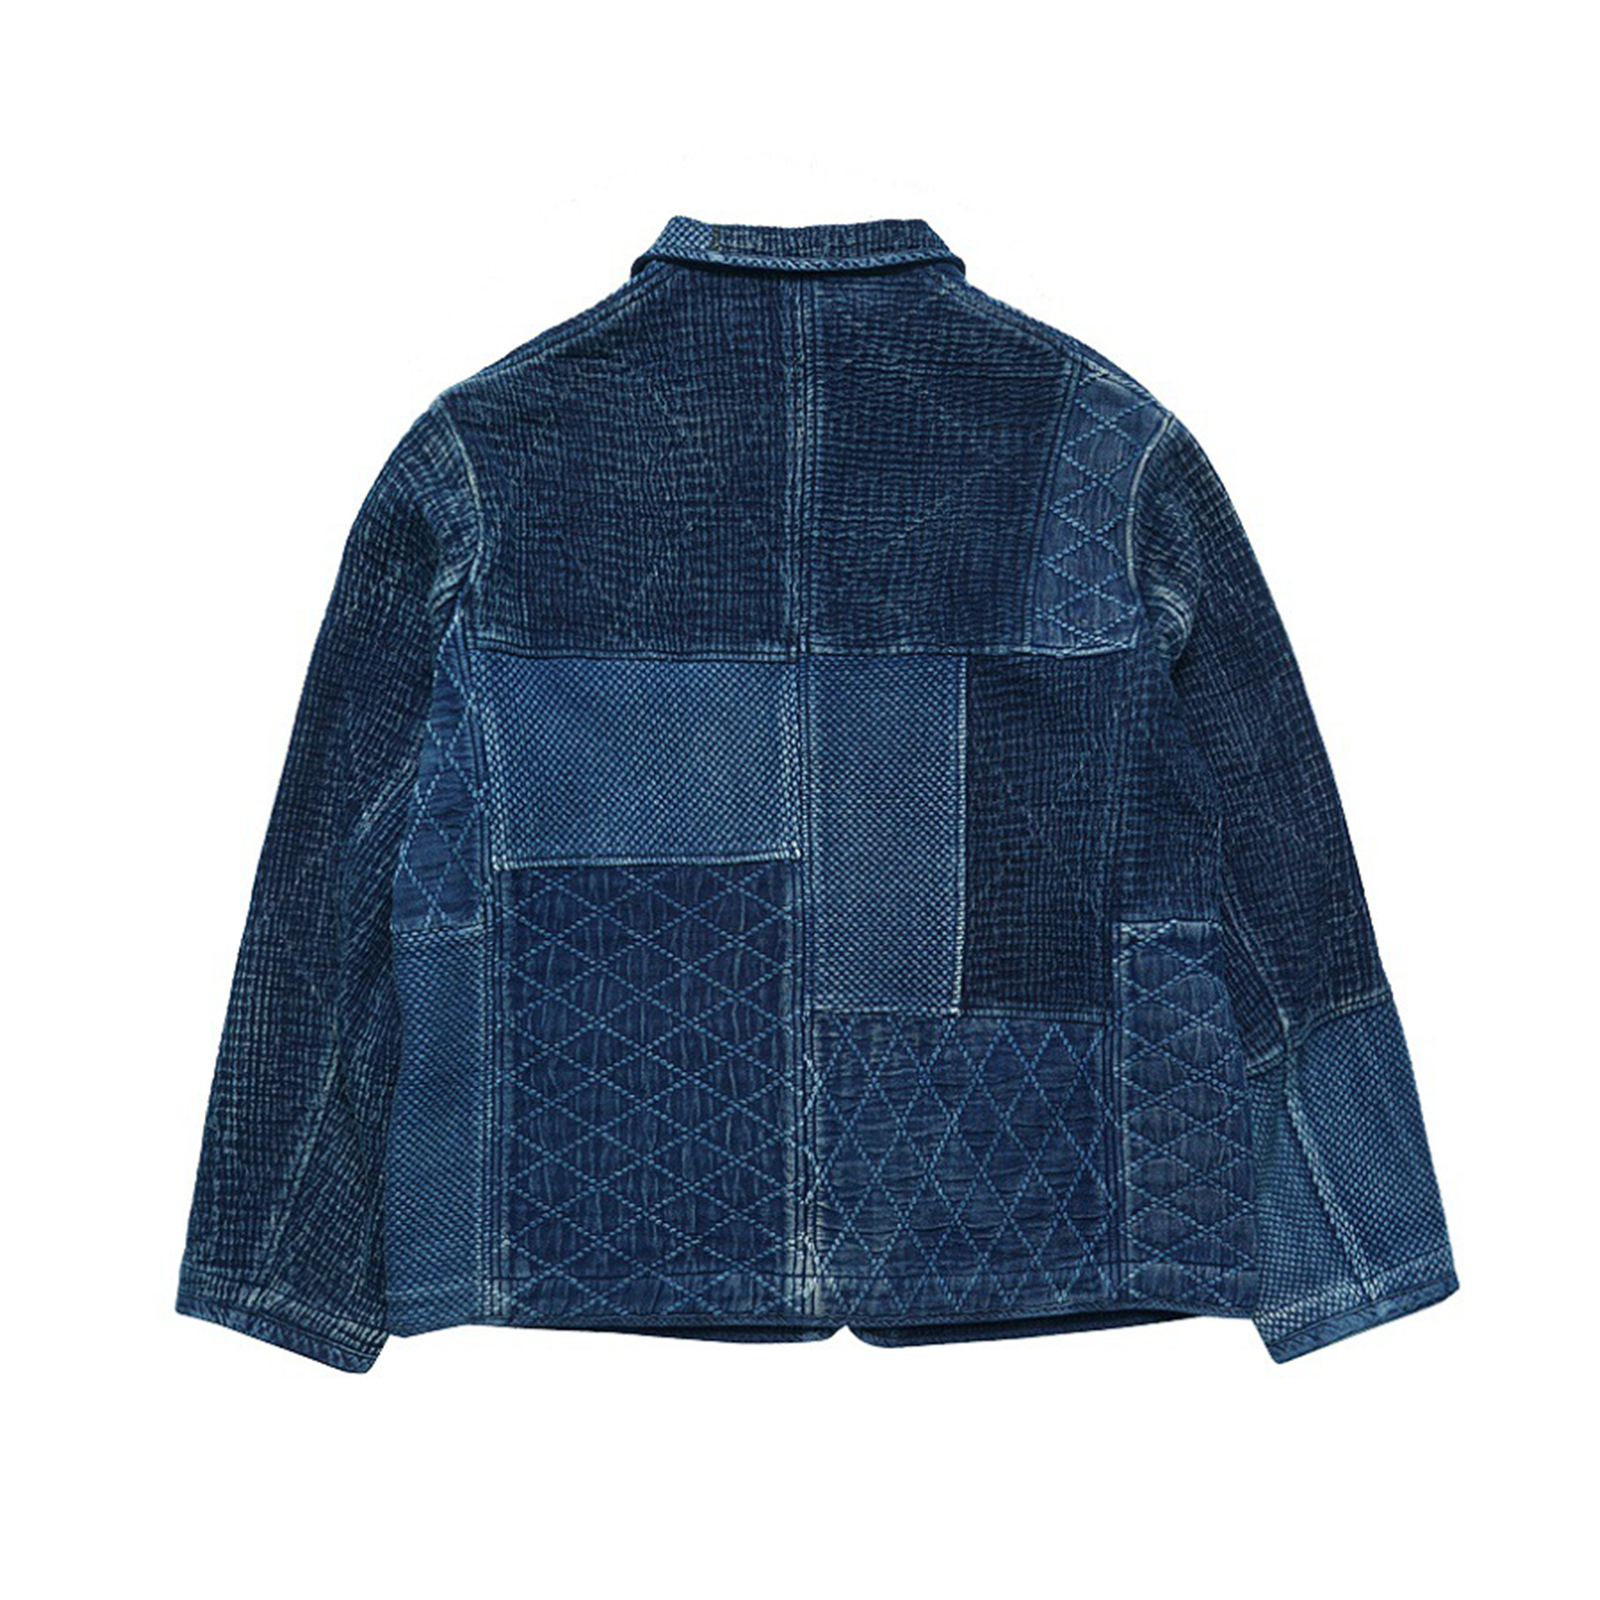 Vintage Sashiko Kendo Plant-dyed Indigo Tattered French Work jacket